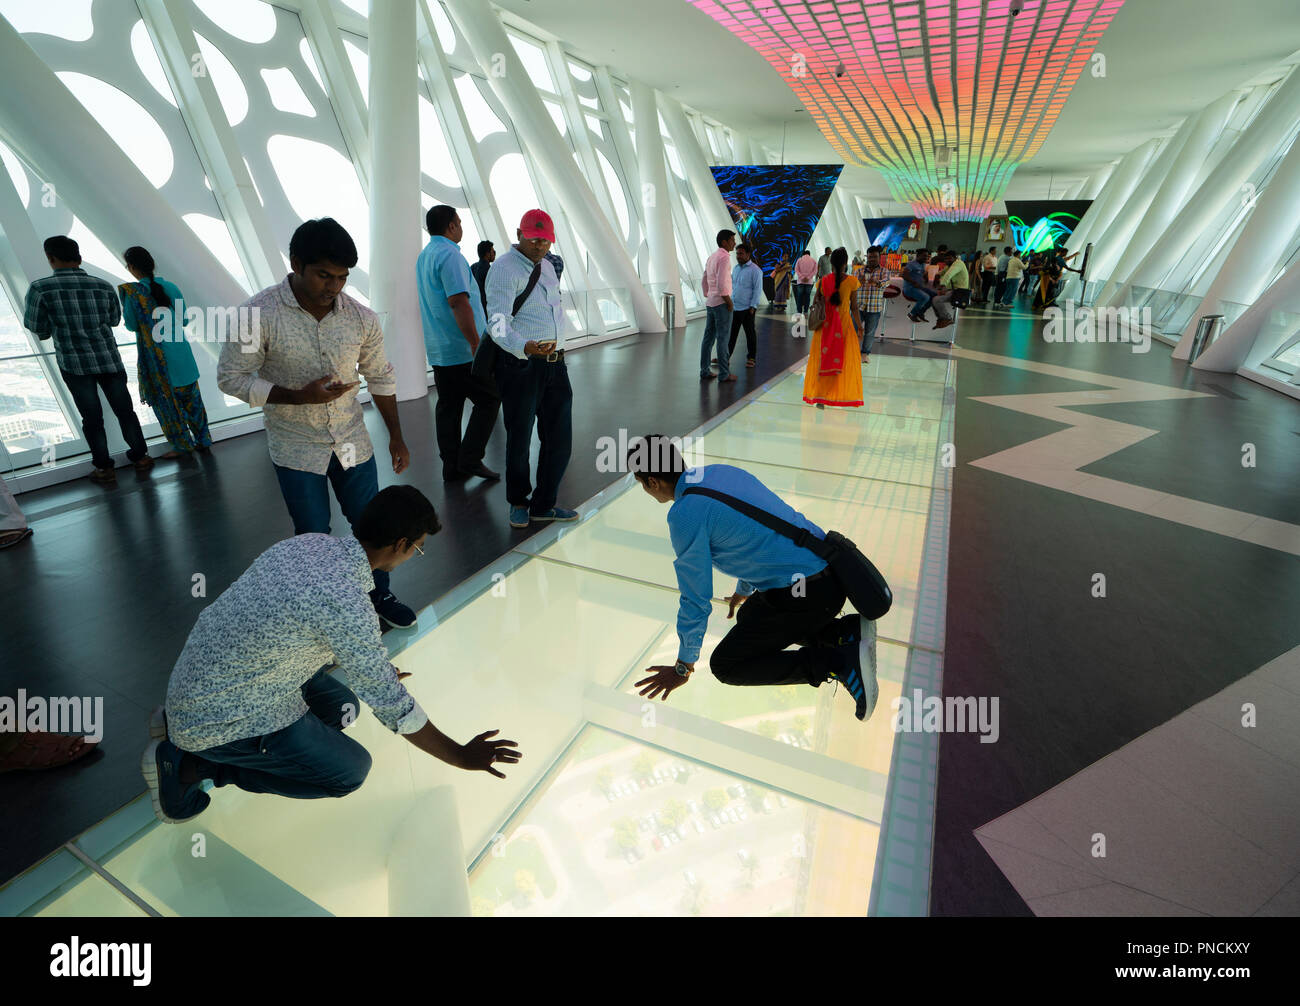 Le cadre de Dubaï , une nouvelle attraction touristique avec une forte concentration de vue, c'est-à DUBAÏ, ÉMIRATS ARABES UNIS, Émirats Arabes Unis Banque D'Images